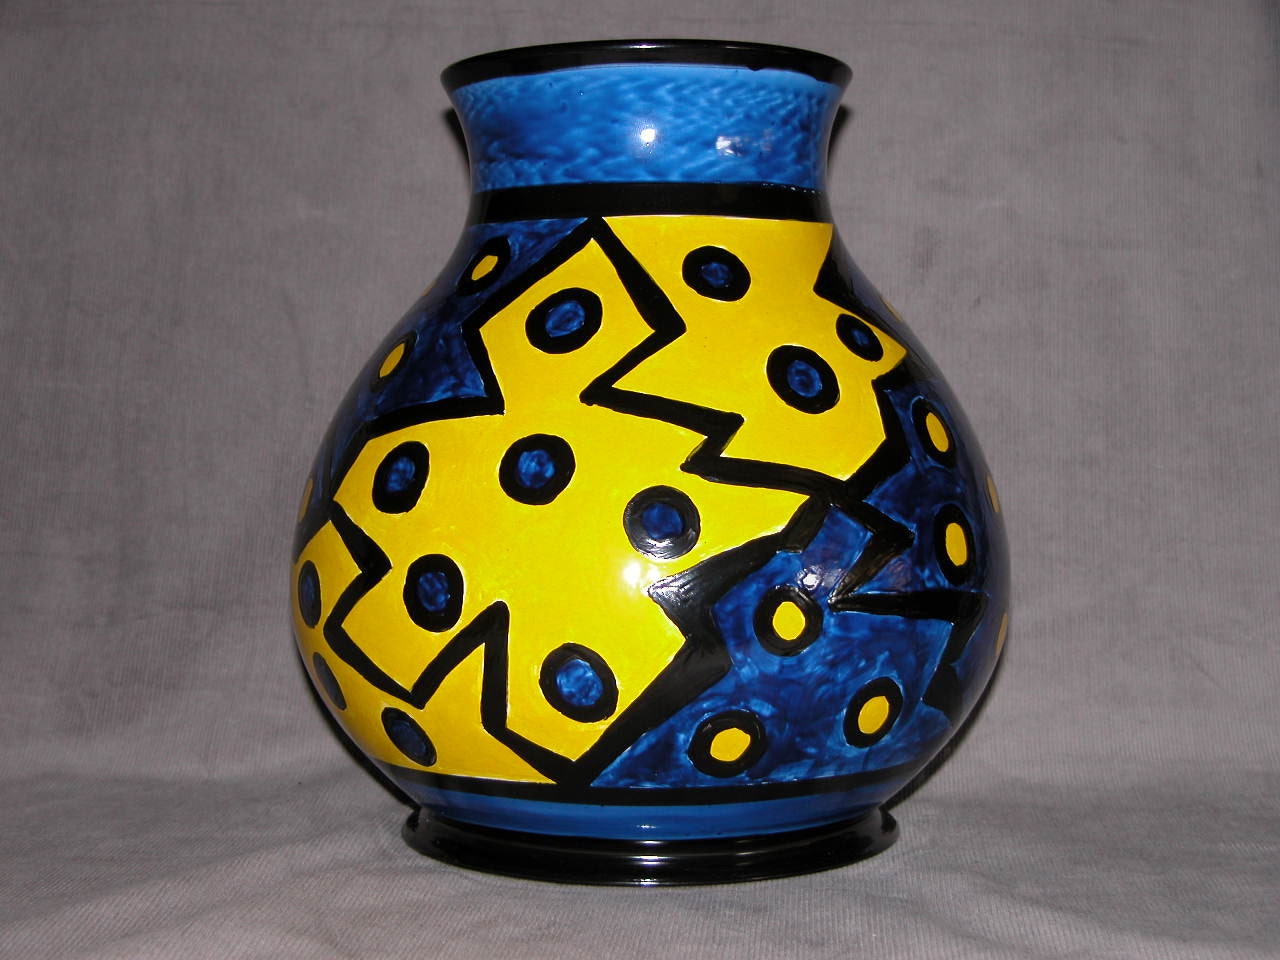 Aztec Vase